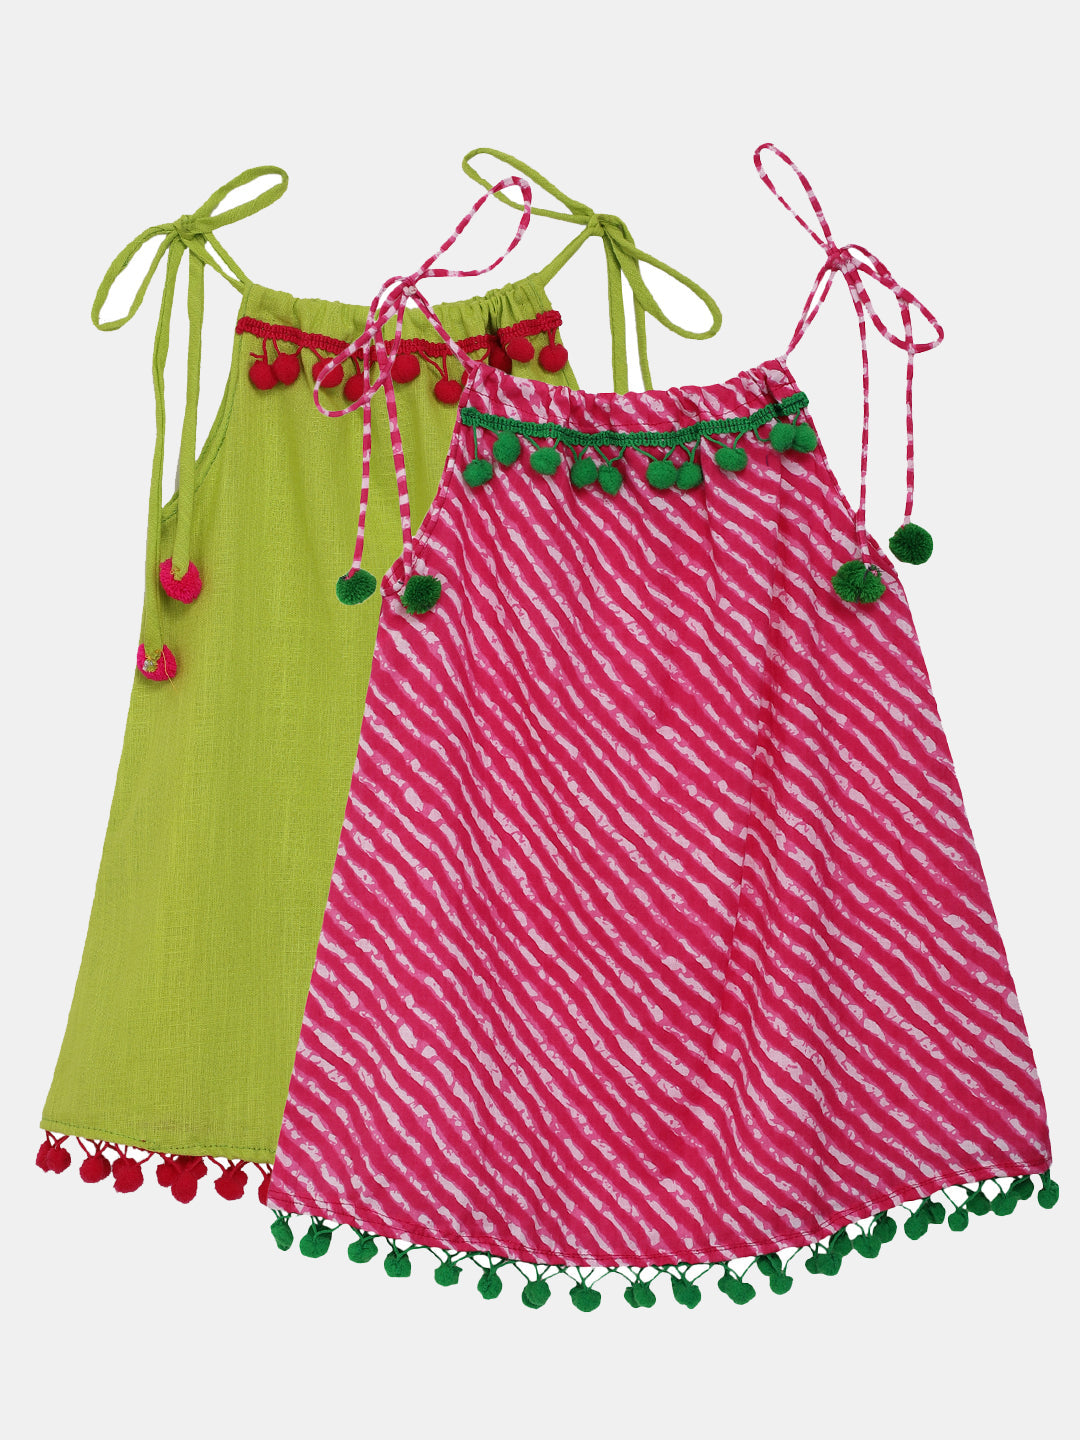 BownBee Infant Adjustable Cotton Jhabla Set of 2 - Pink Green